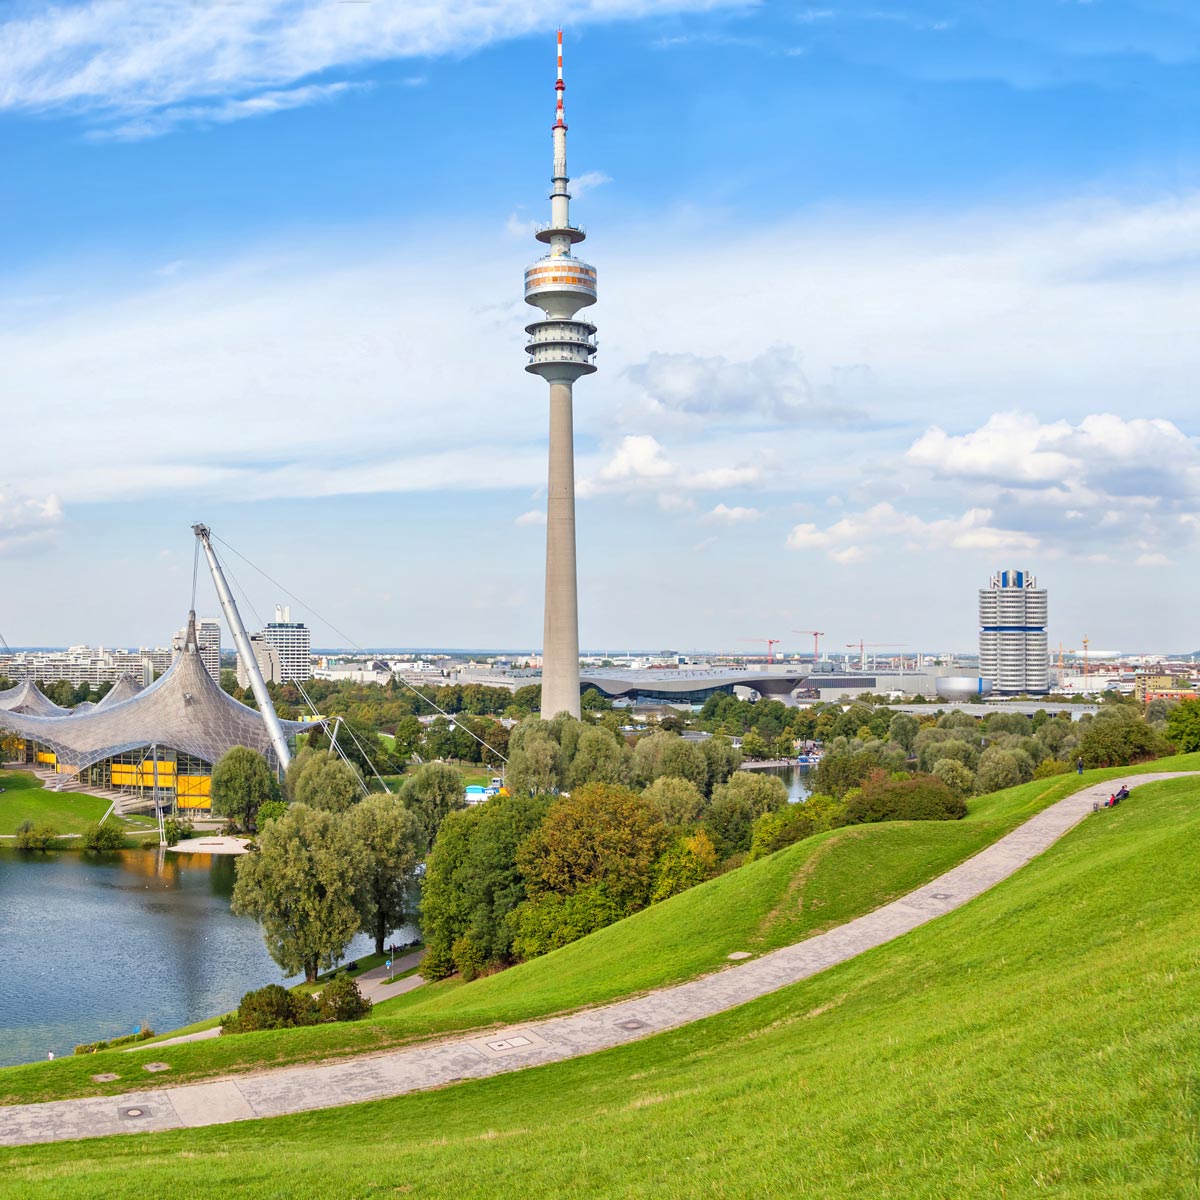 Olympiapark München - nachhaltige Stadtentwicklung bedeutet mehr als nur Grünflächen